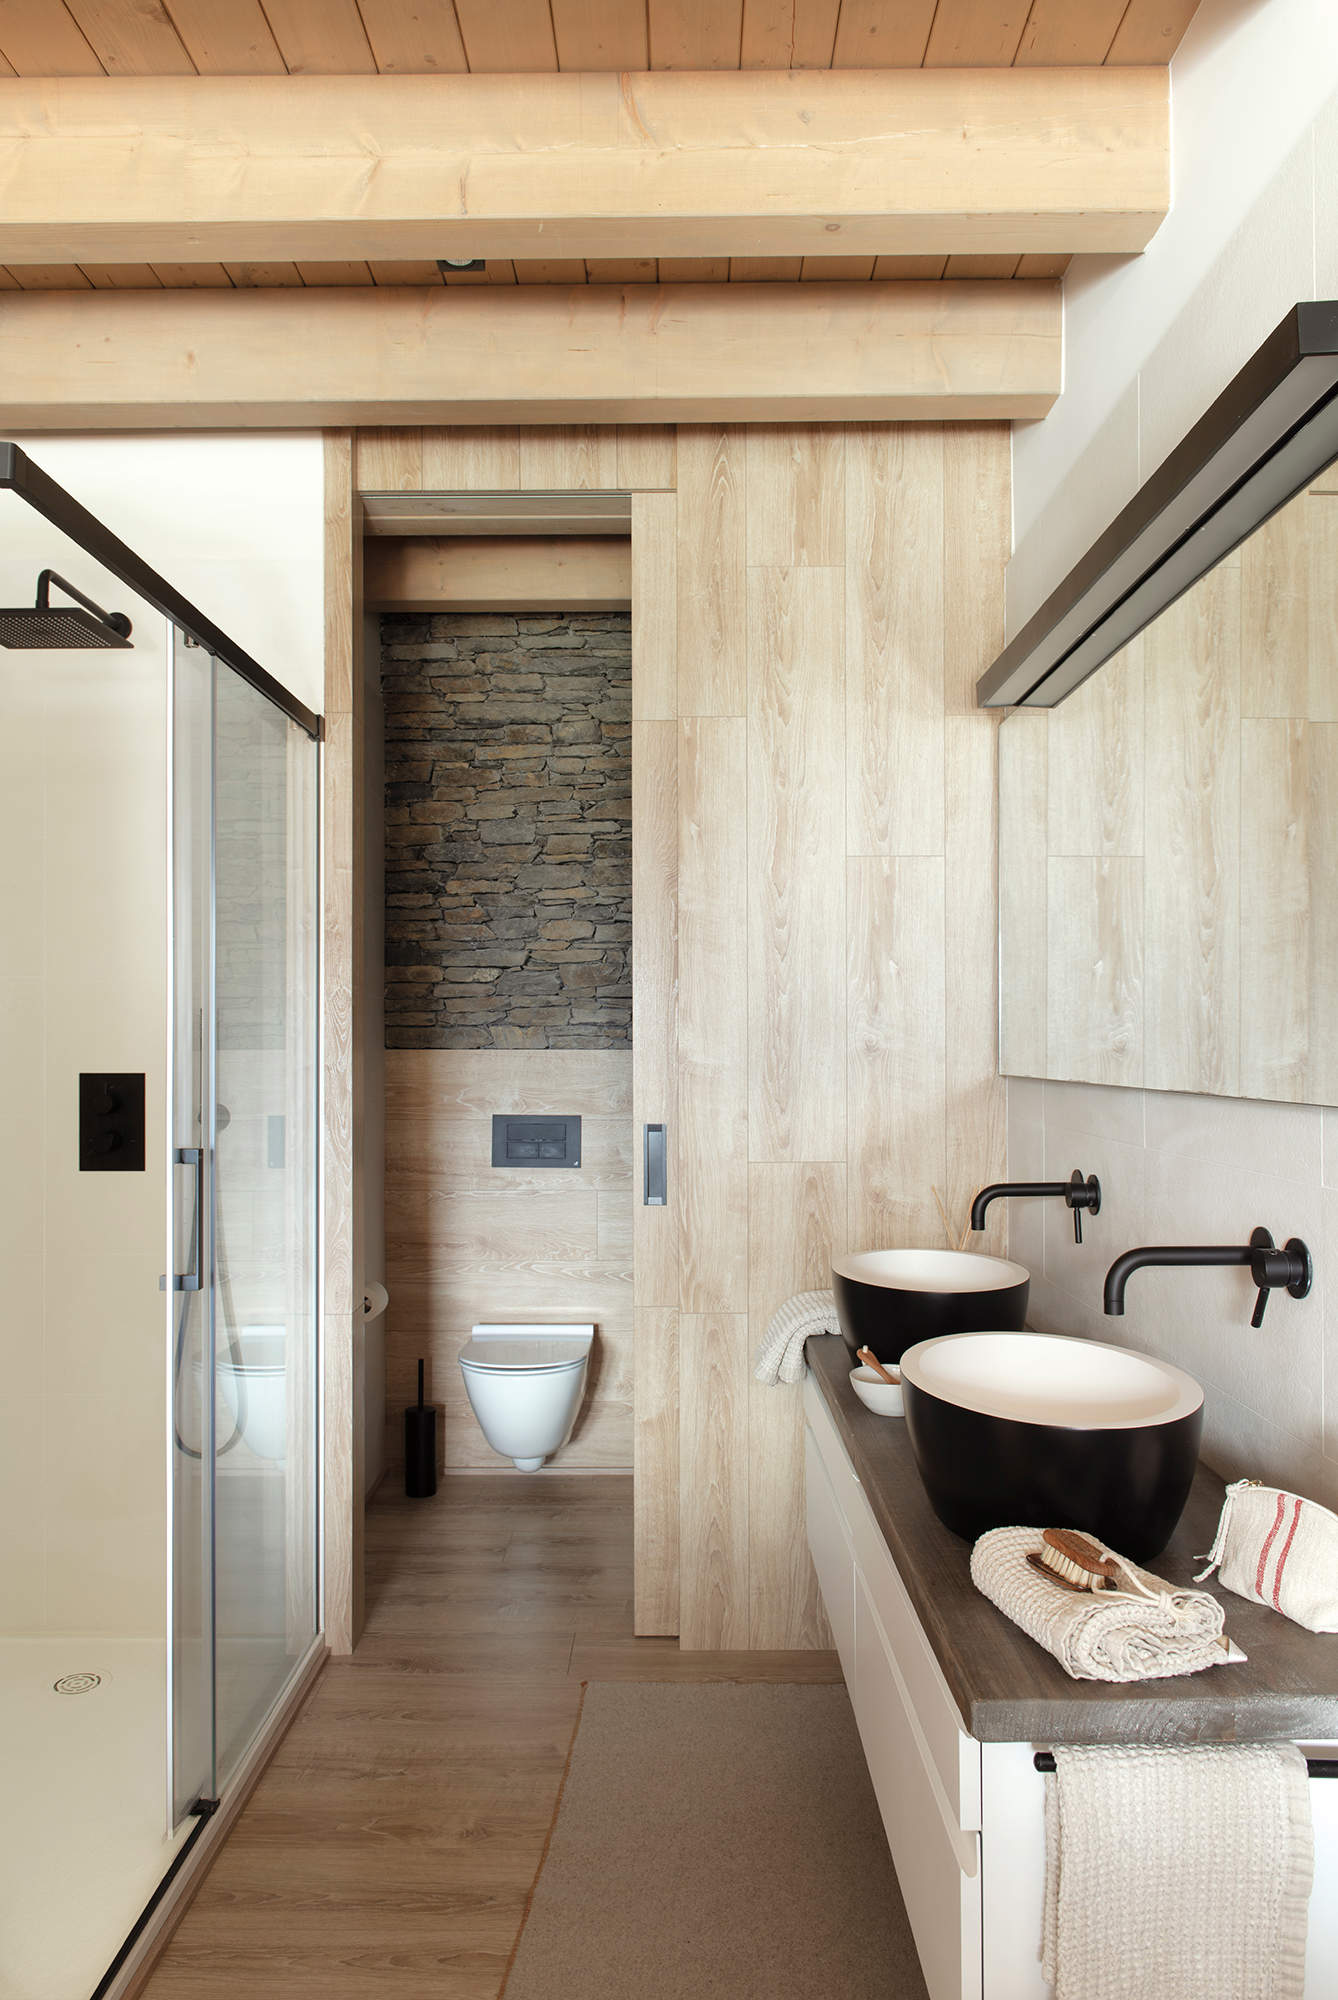 Baño con inodoro en cabina, decorado en tonos naturales y madera.